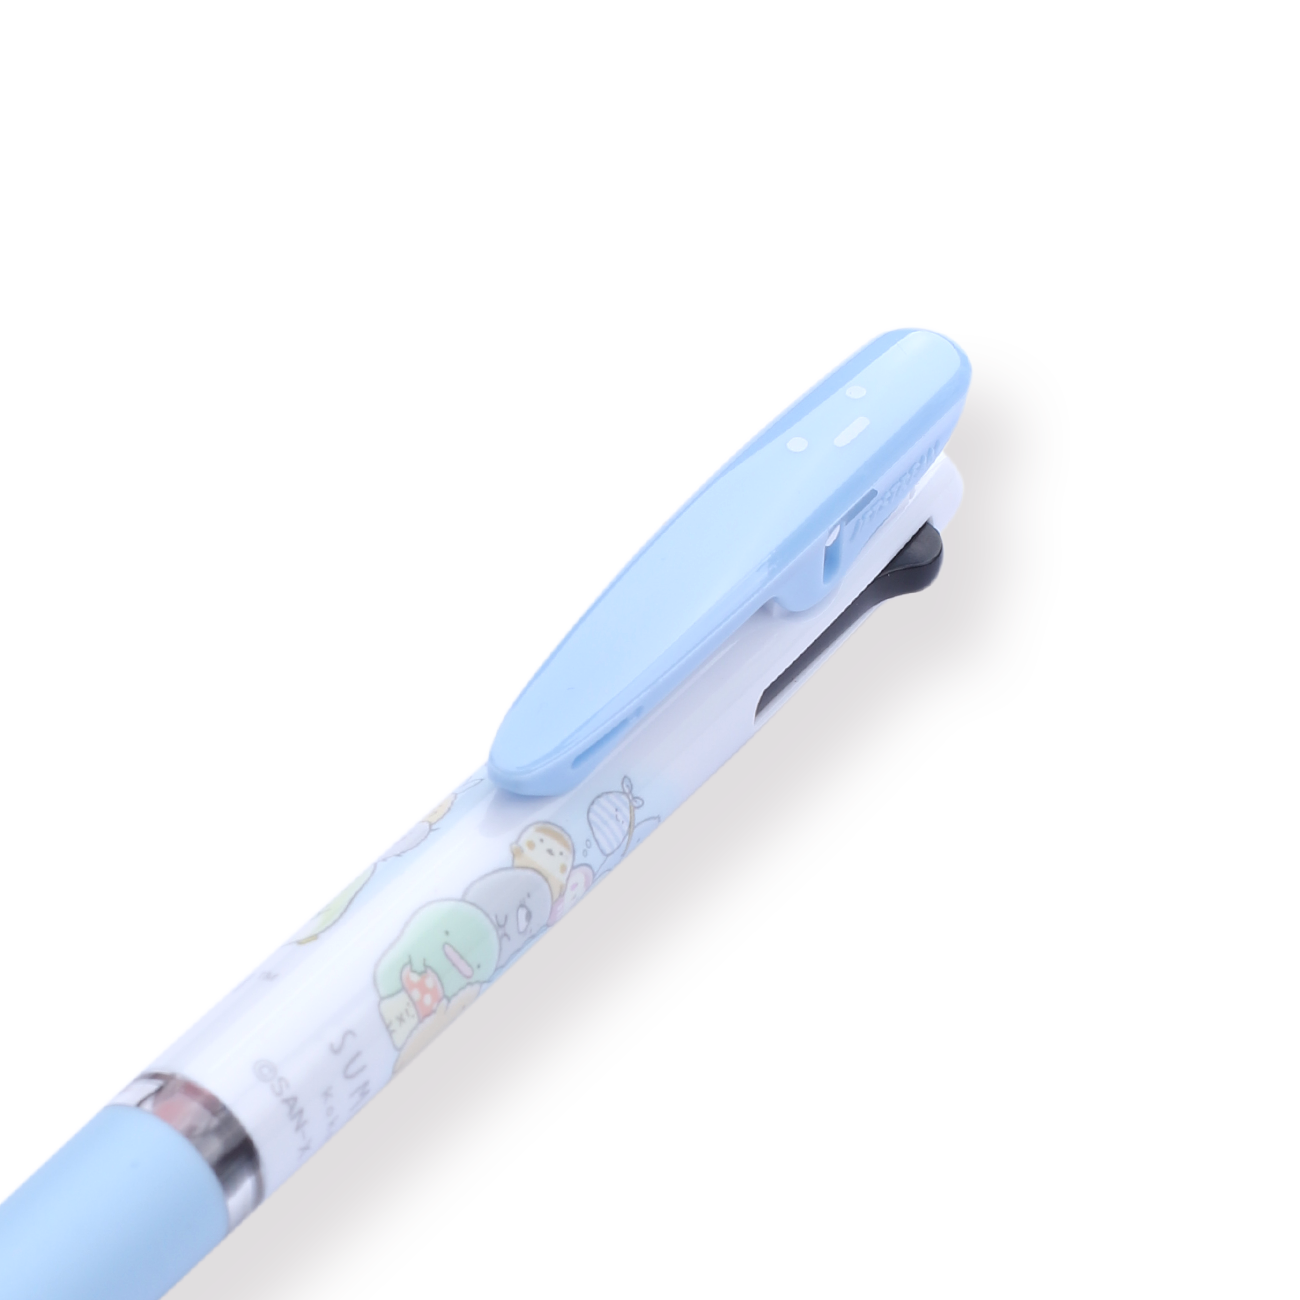 Uni Jetstream x Sumikko Gurashi 3 Color Limited Edition Multi Pen - 0.5 mm - Blue - Stationery Pal